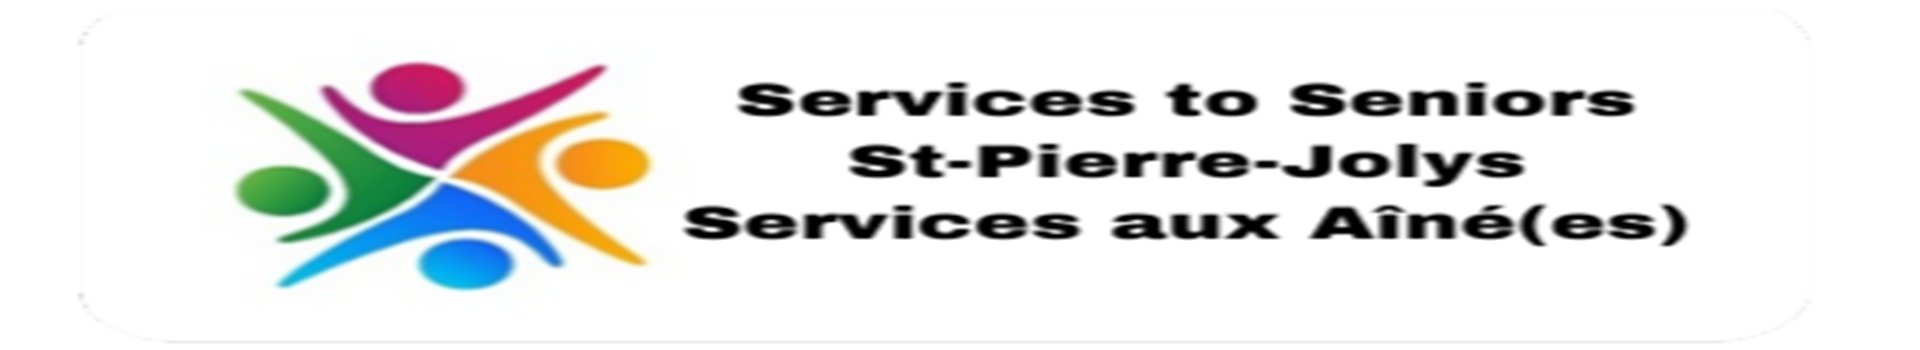 Services aux aînés - Services to Seniors - Information/Referral Services